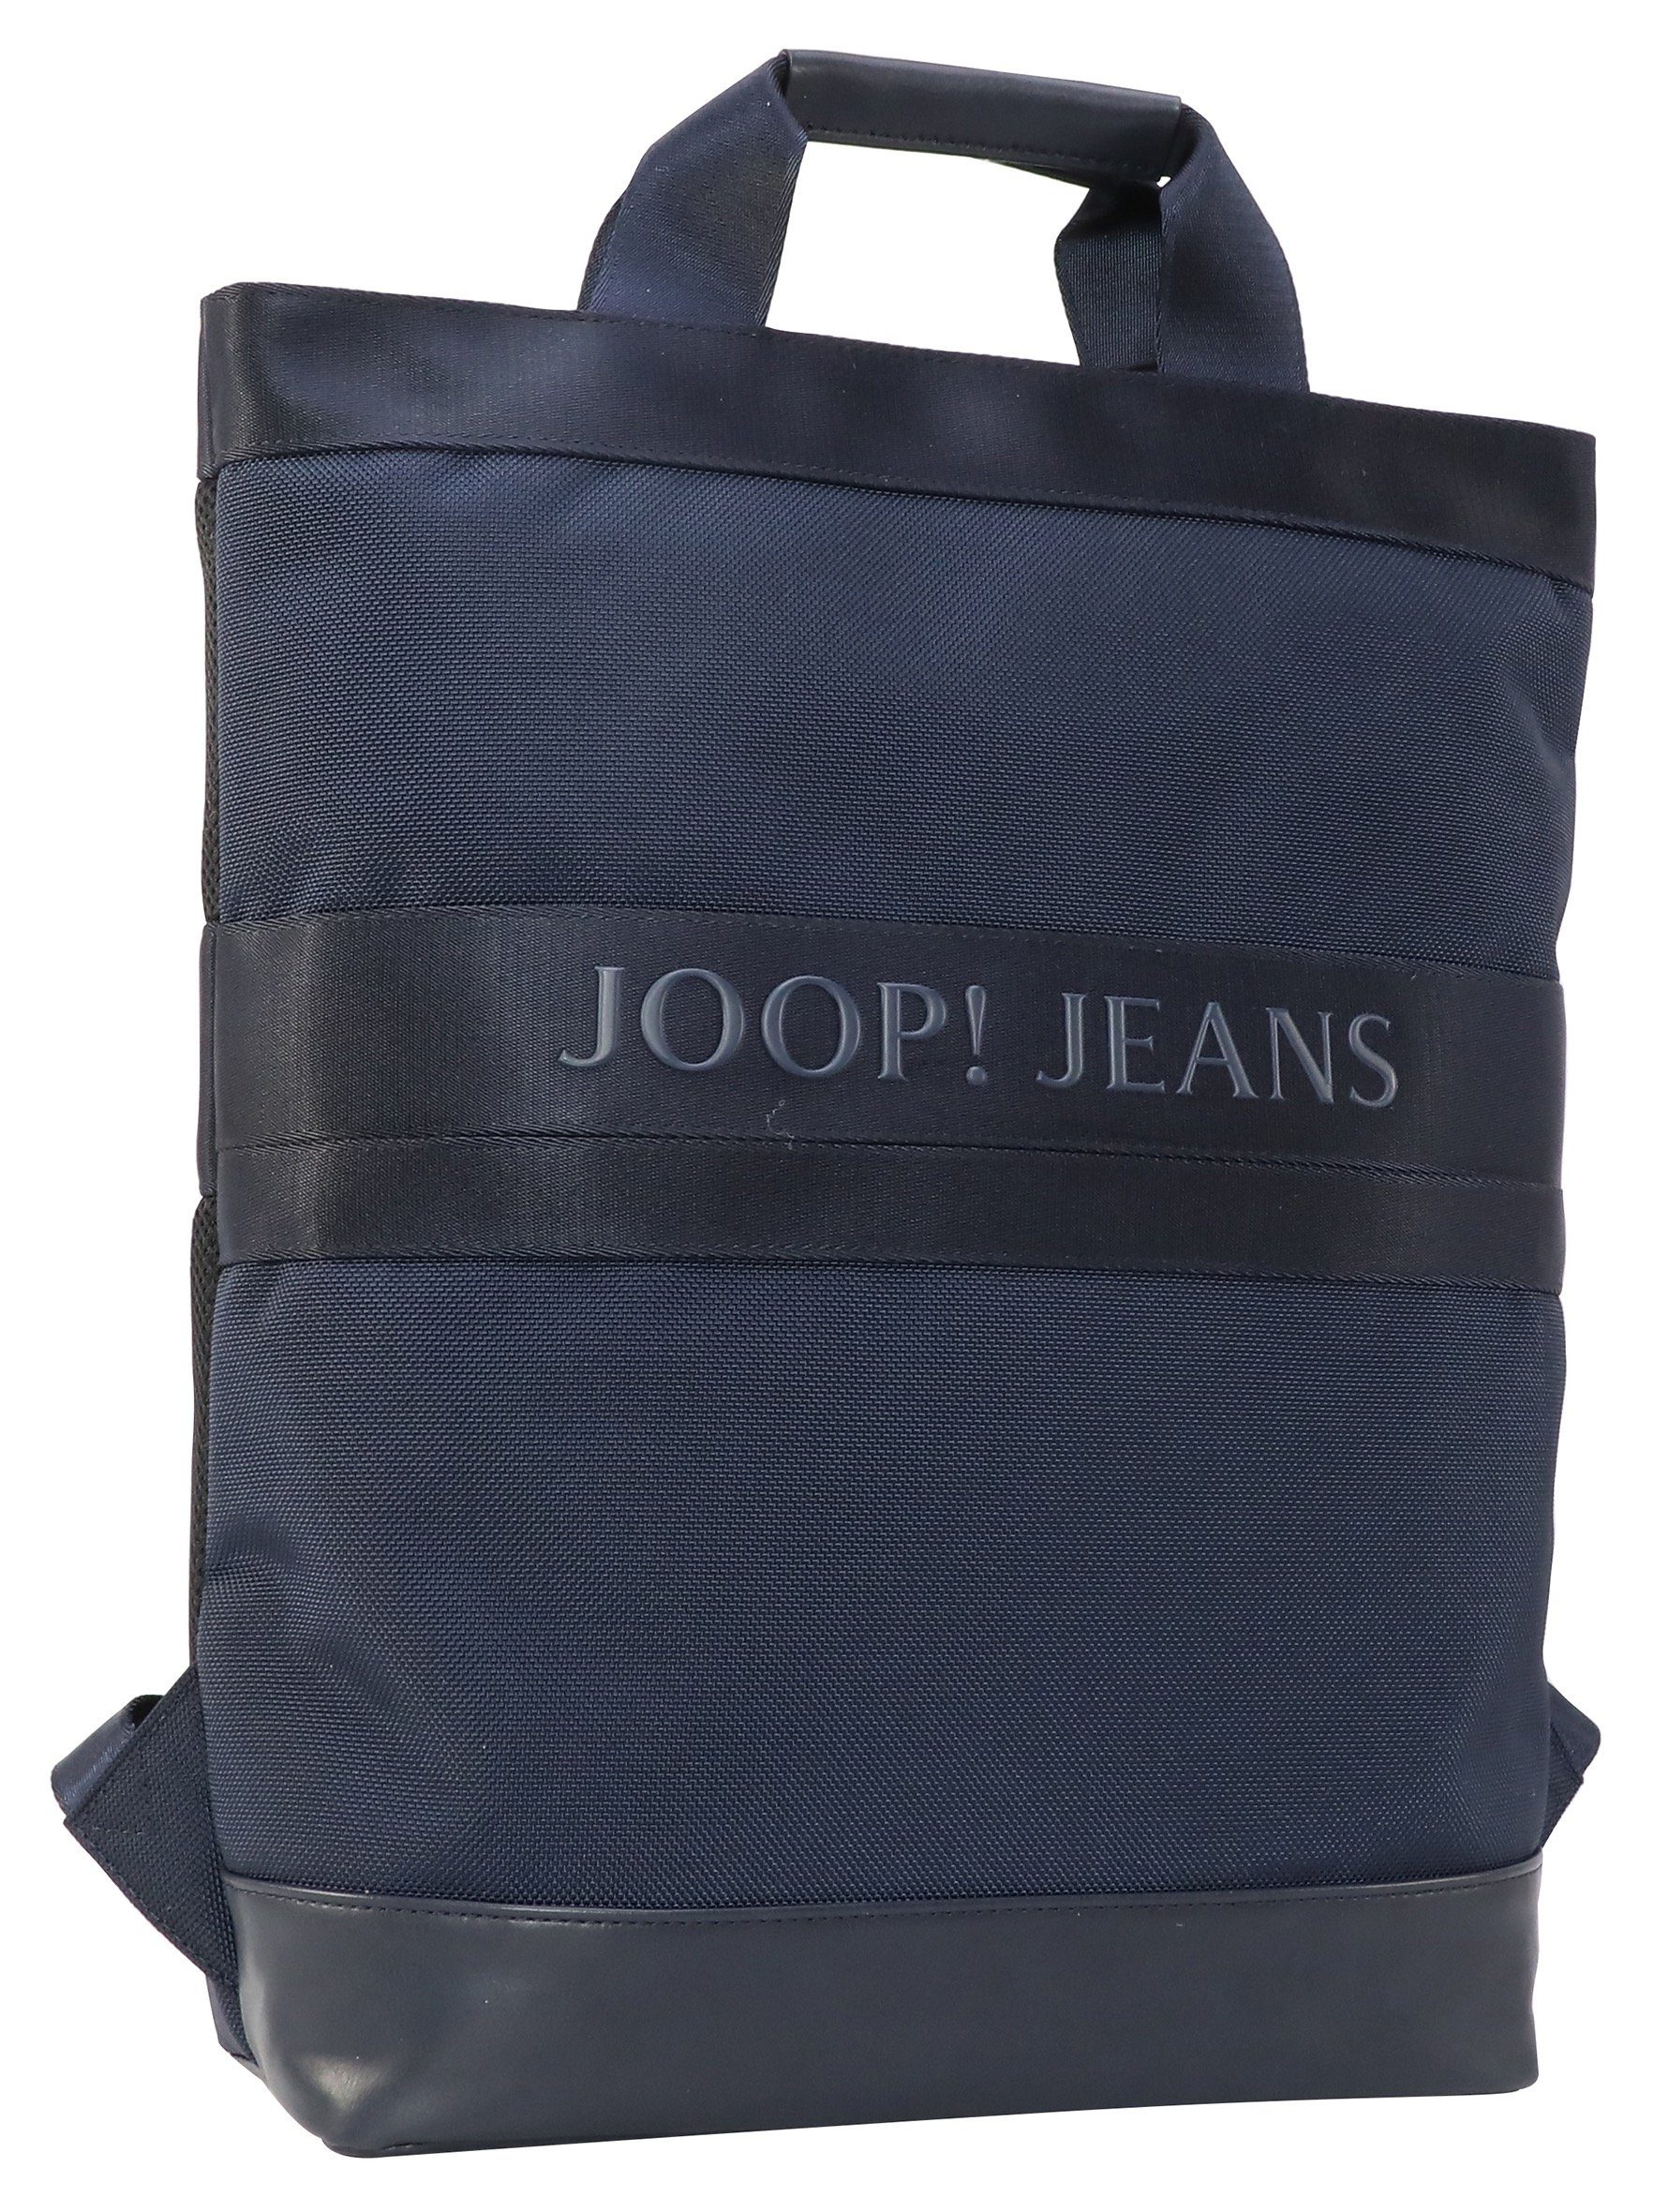 Jeans backpack Joop mit Cityrucksack falk svz, darkblue modica Reißverschluss-Vortasche